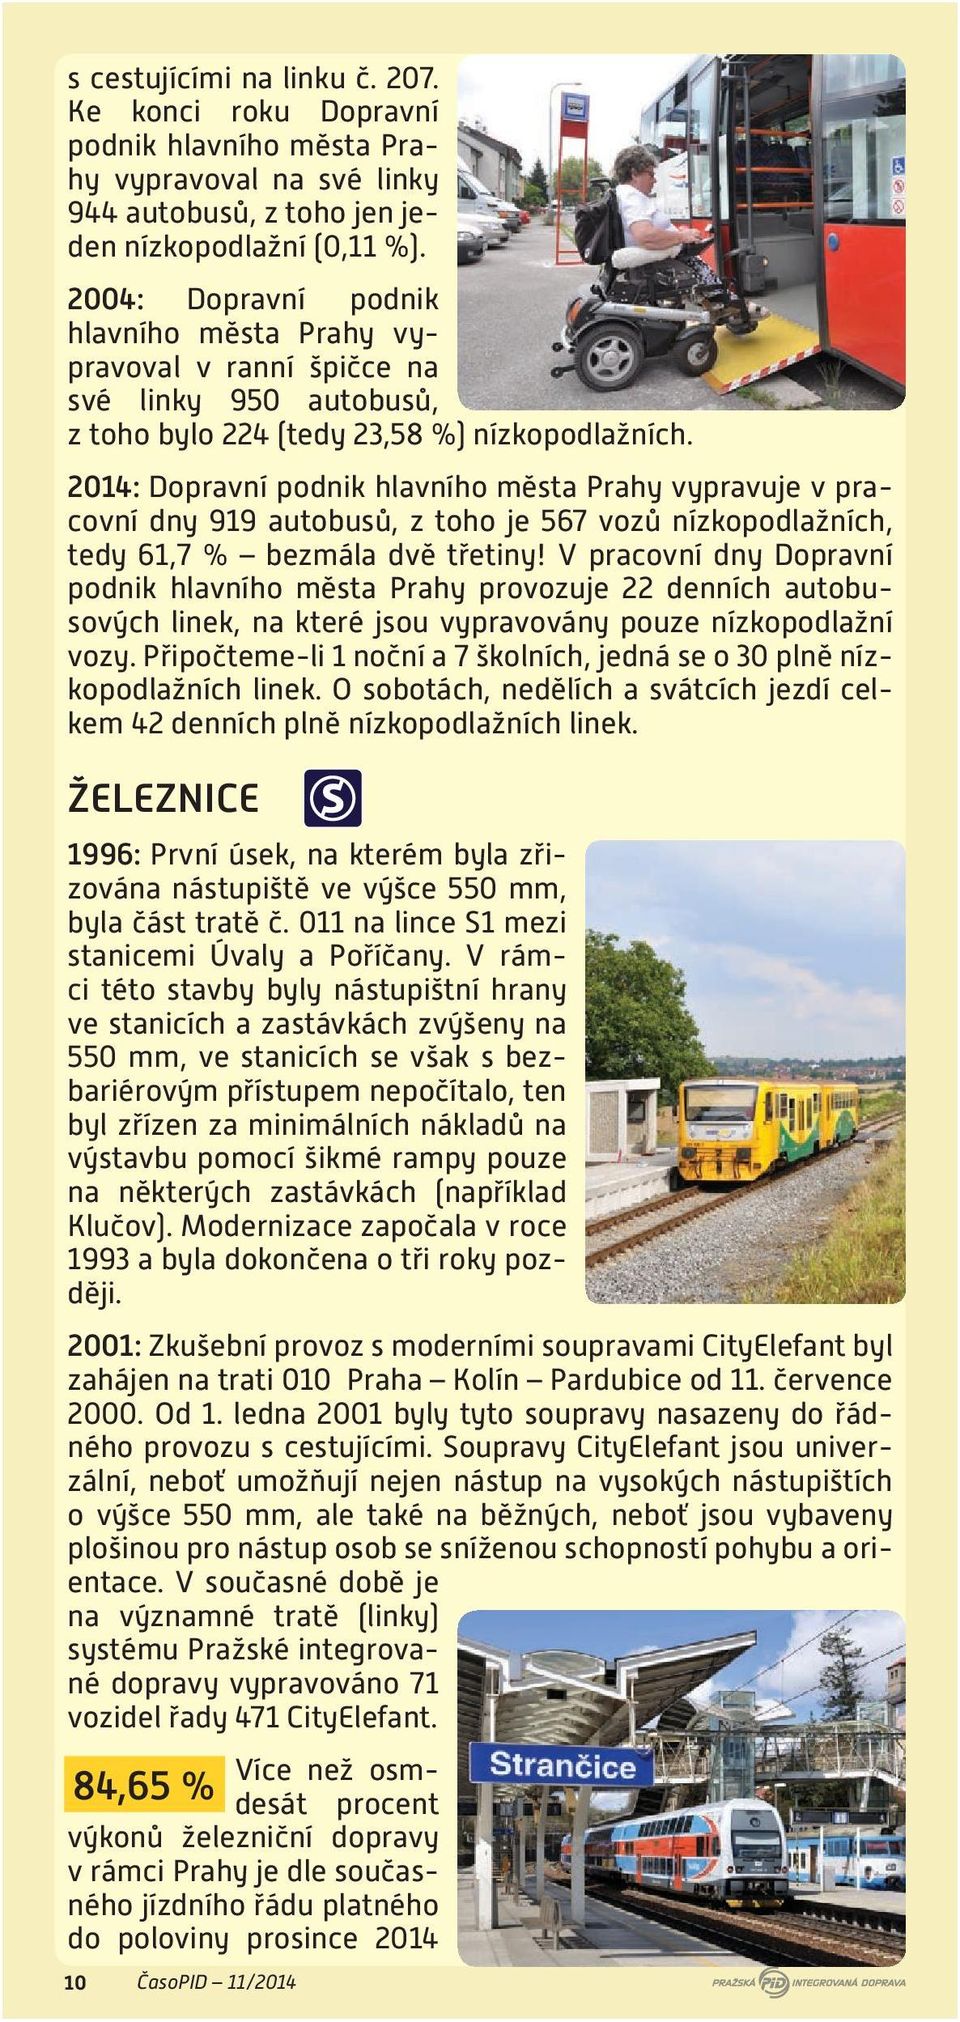 2014: Dopravní podnik hlavního města Prahy vypravuje v pracovní dny 919 autobusů, z toho je 567 vozů nízkopodlažních, tedy 61,7 % bezmála dvě třetiny!